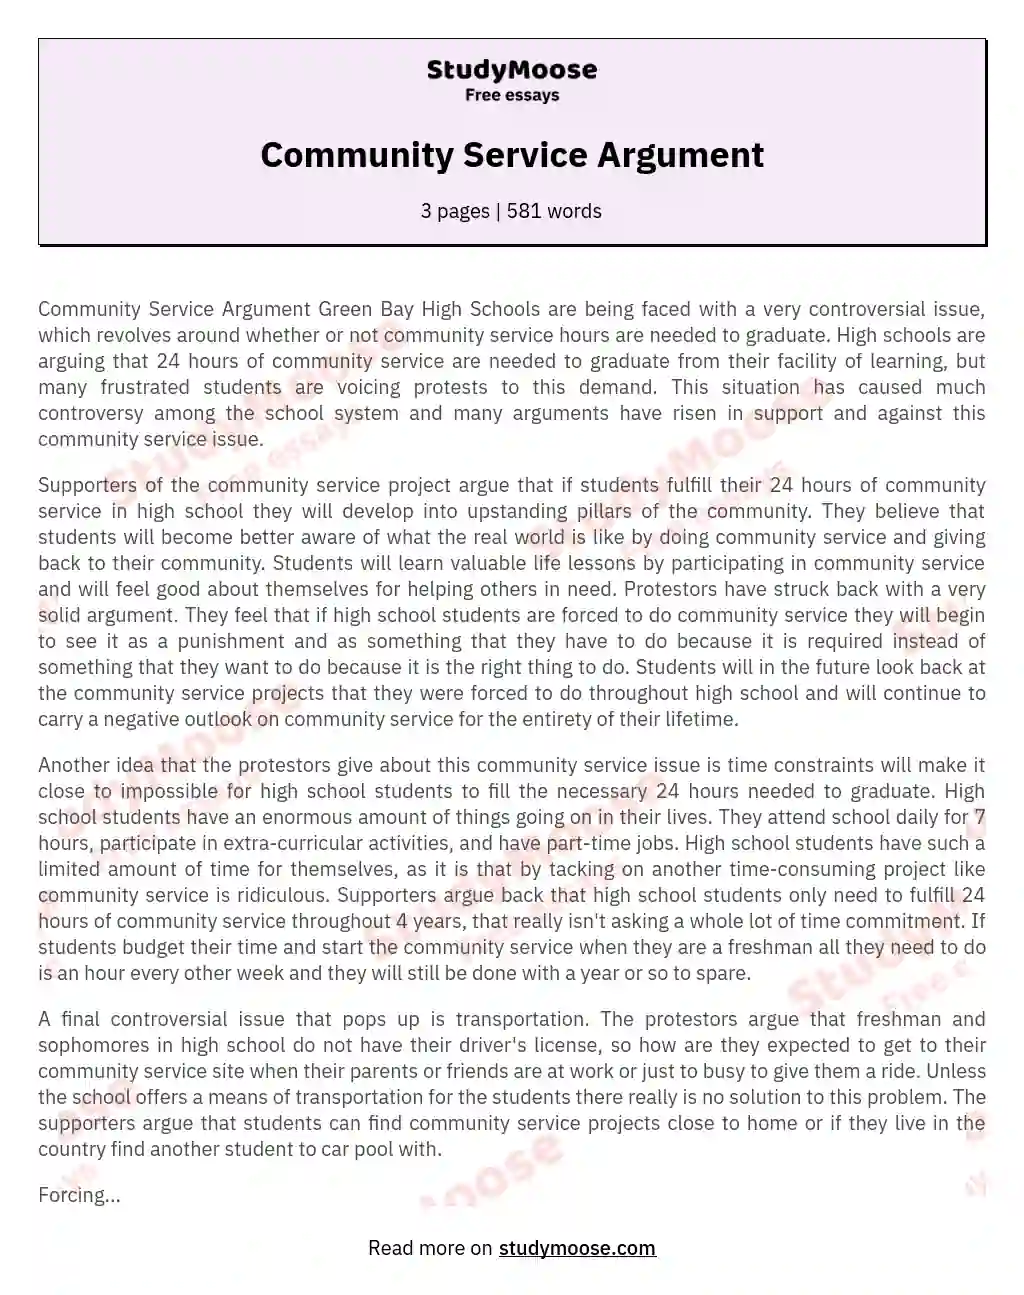 Community Service Argument essay